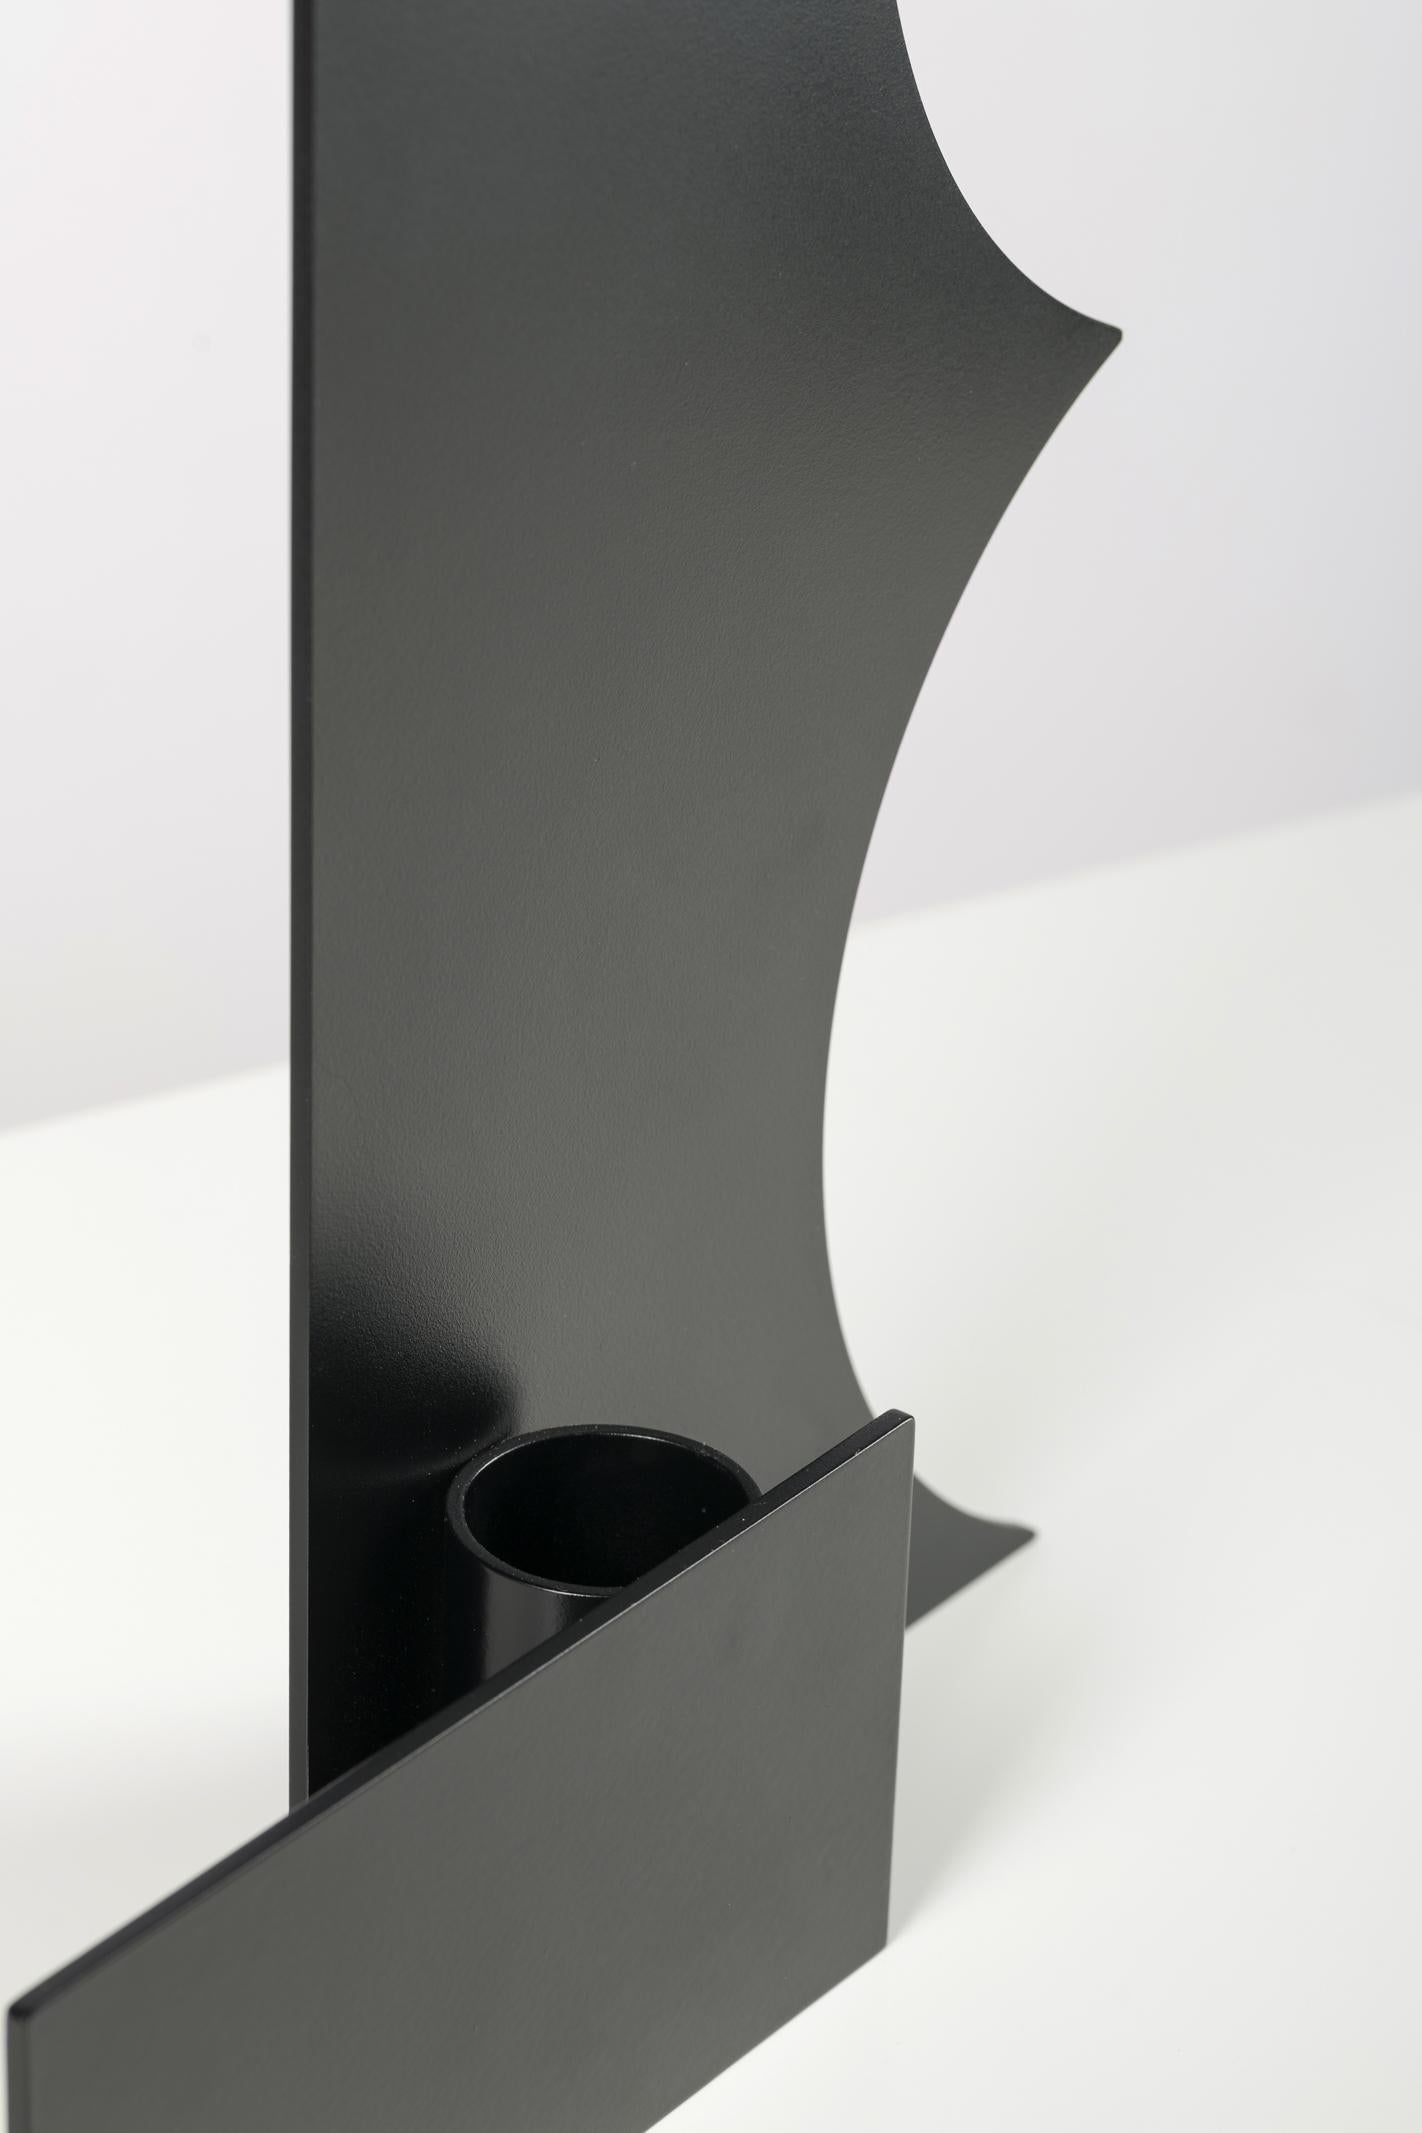 Varnished Cutout V05 - Contemporary Black Metal Sculptural Vase by Millim Studio For Sale